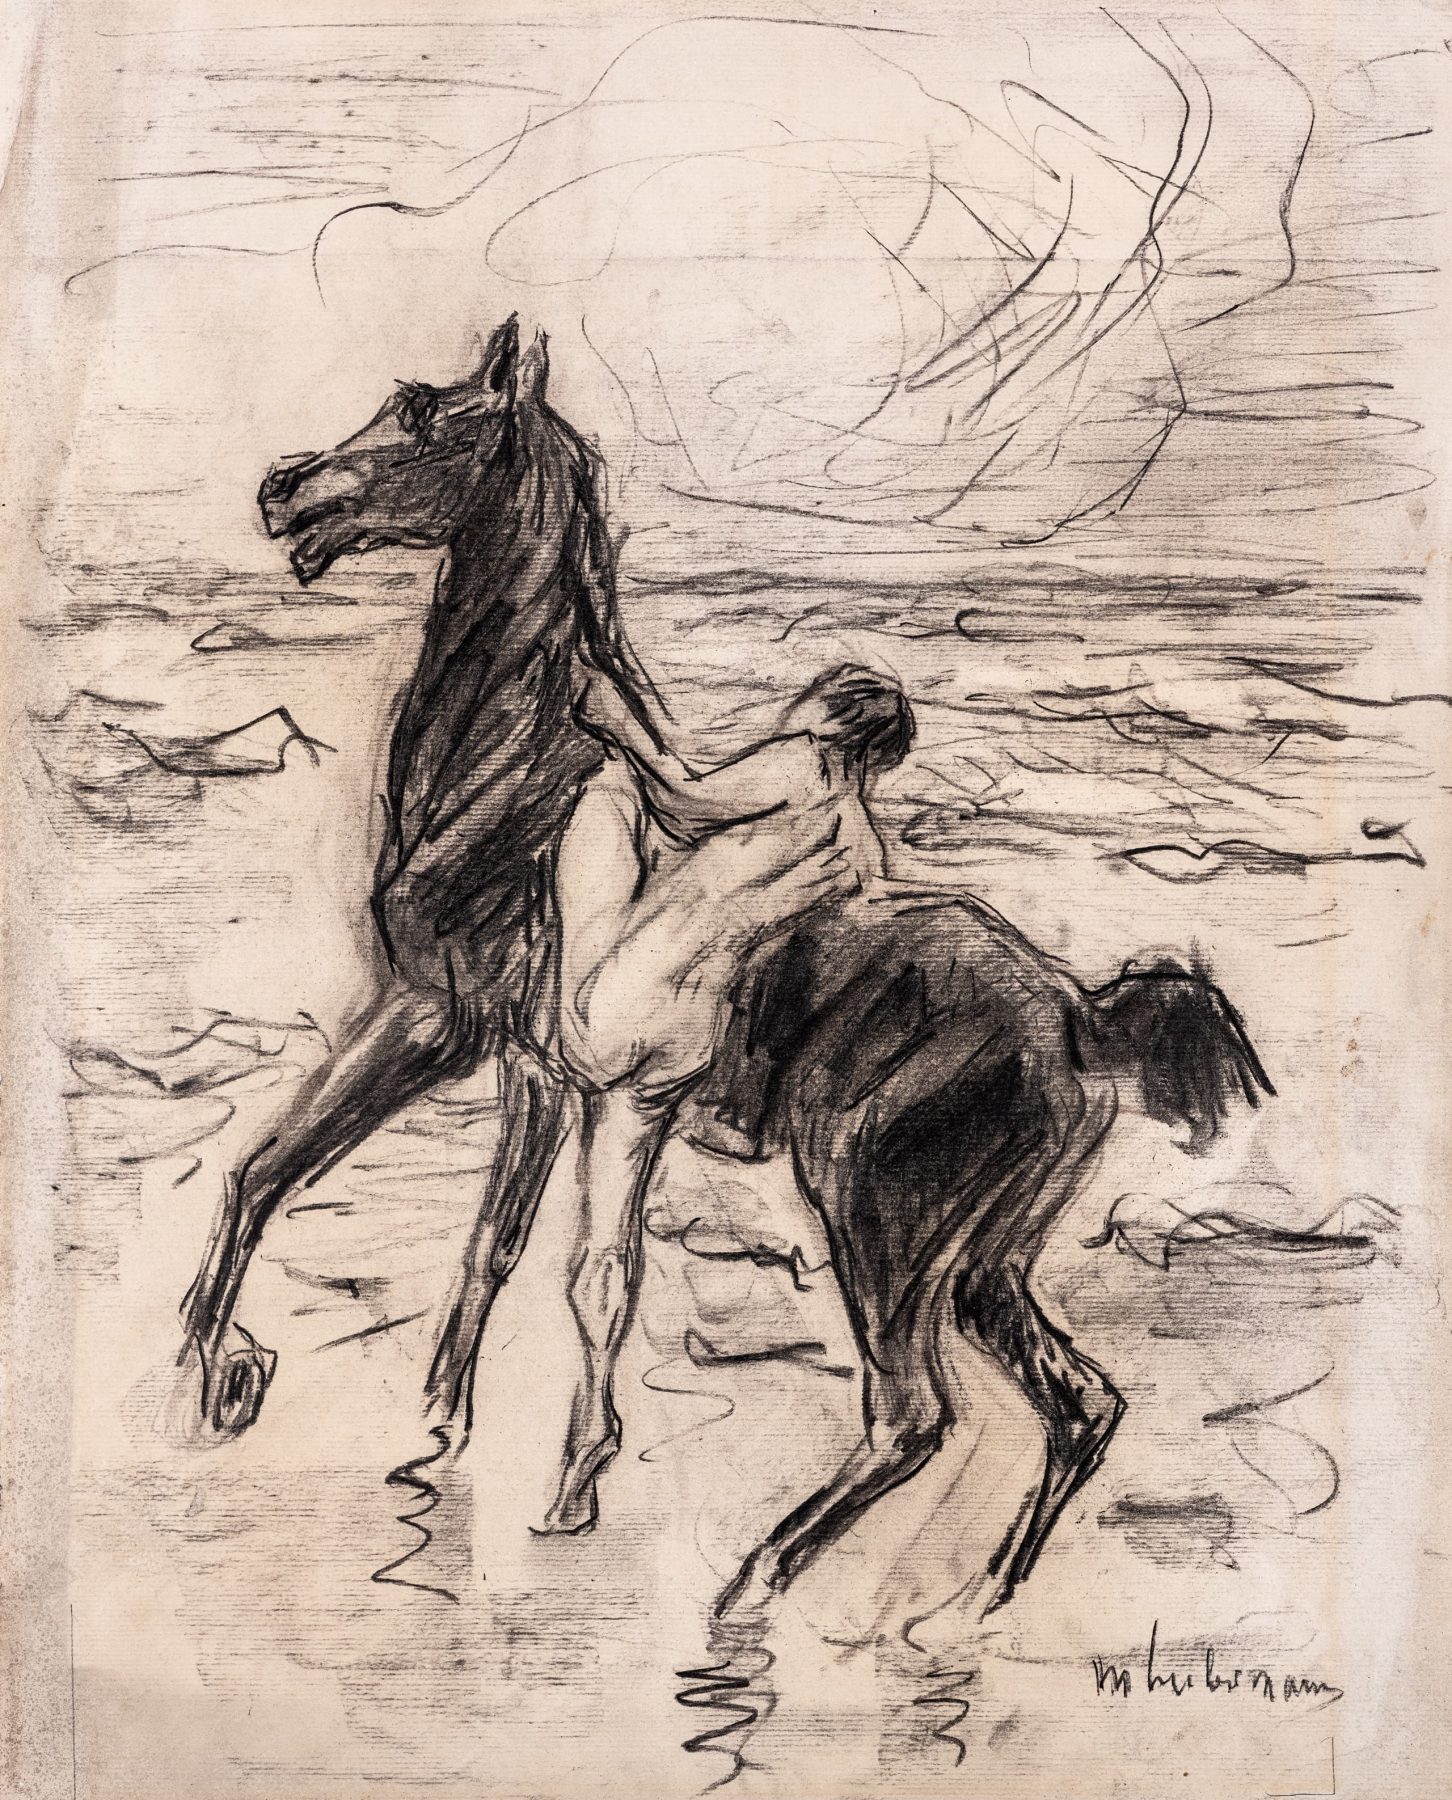 Schwarzweiße Kreidezeichnung mit einem schwarzen Pferd in der Mitte, eine nackte Figur versucht auf das Pferd zu steigen. Im Hintergrund ist das Meer. Die Kreidestriche sind locker und schnell.